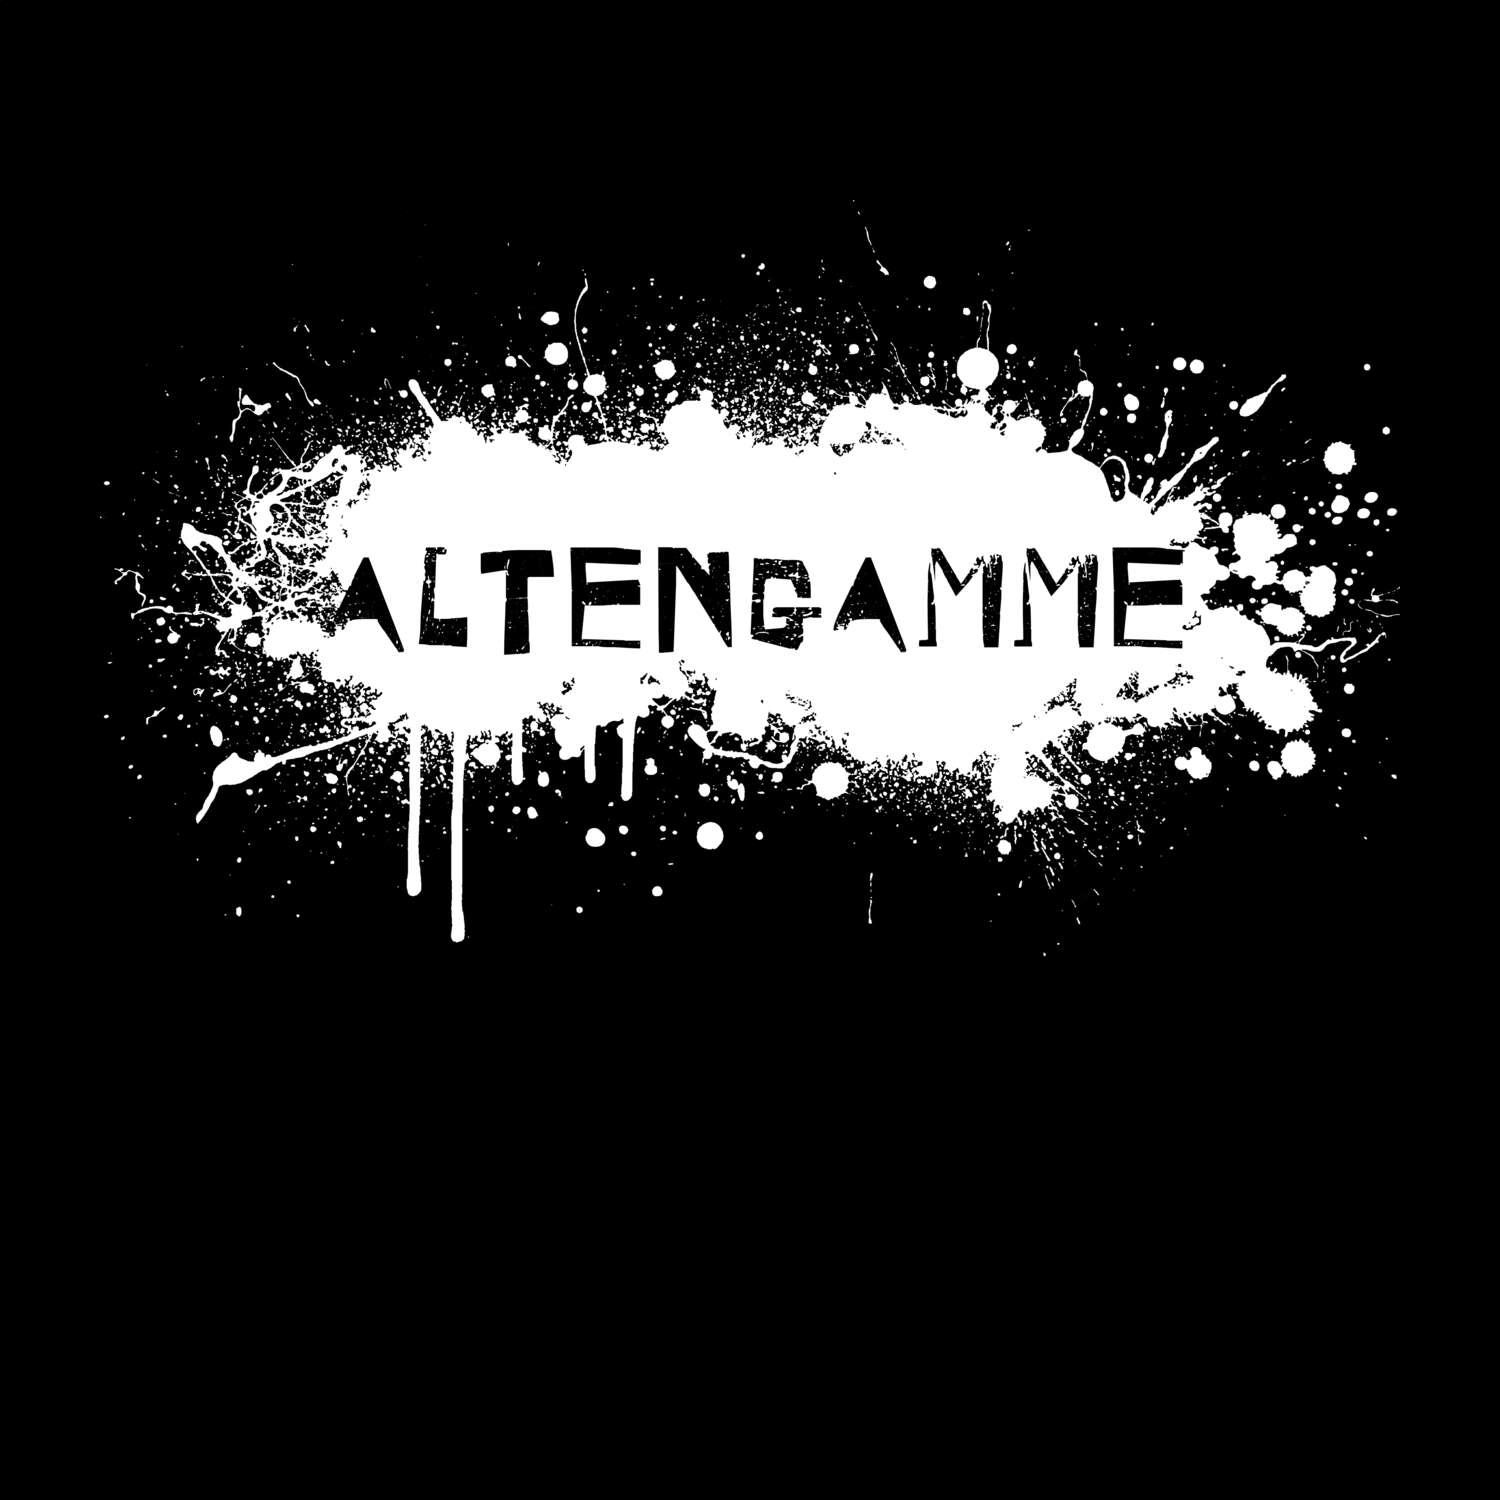 Altengamme T-Shirt »Paint Splash Punk«